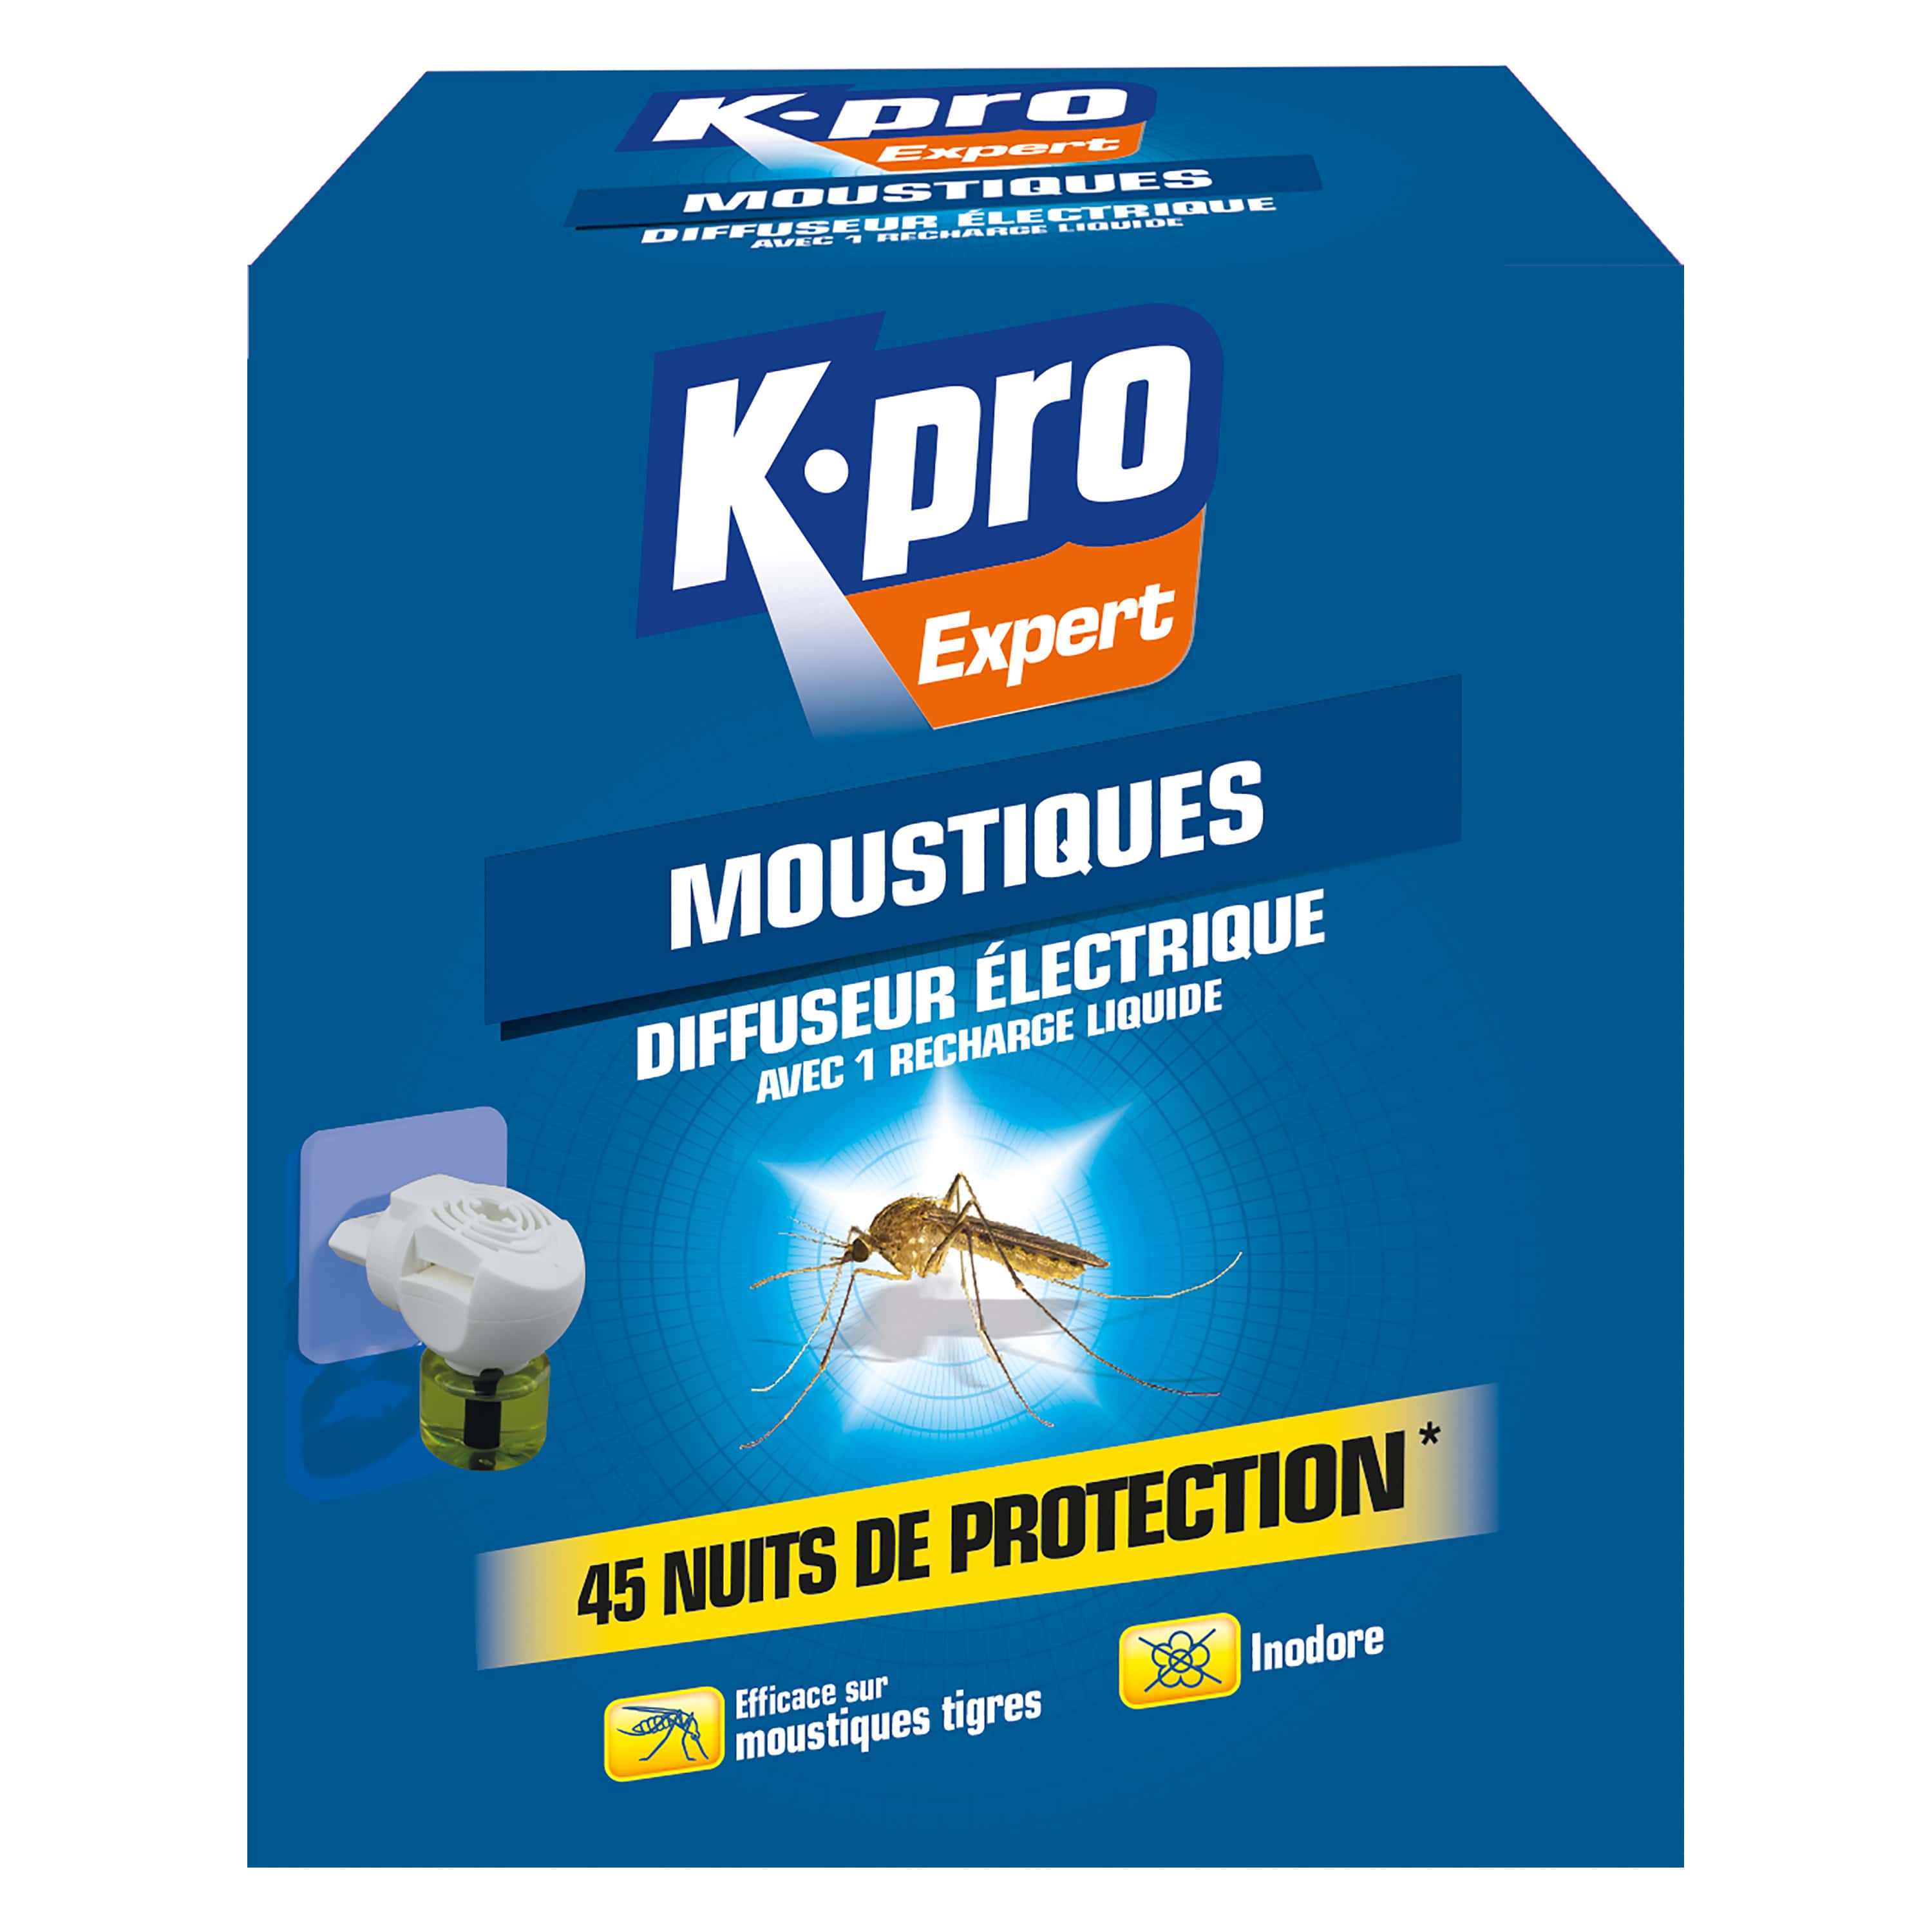 Produits anti-moustiques : choisir un produit sûr et efficace